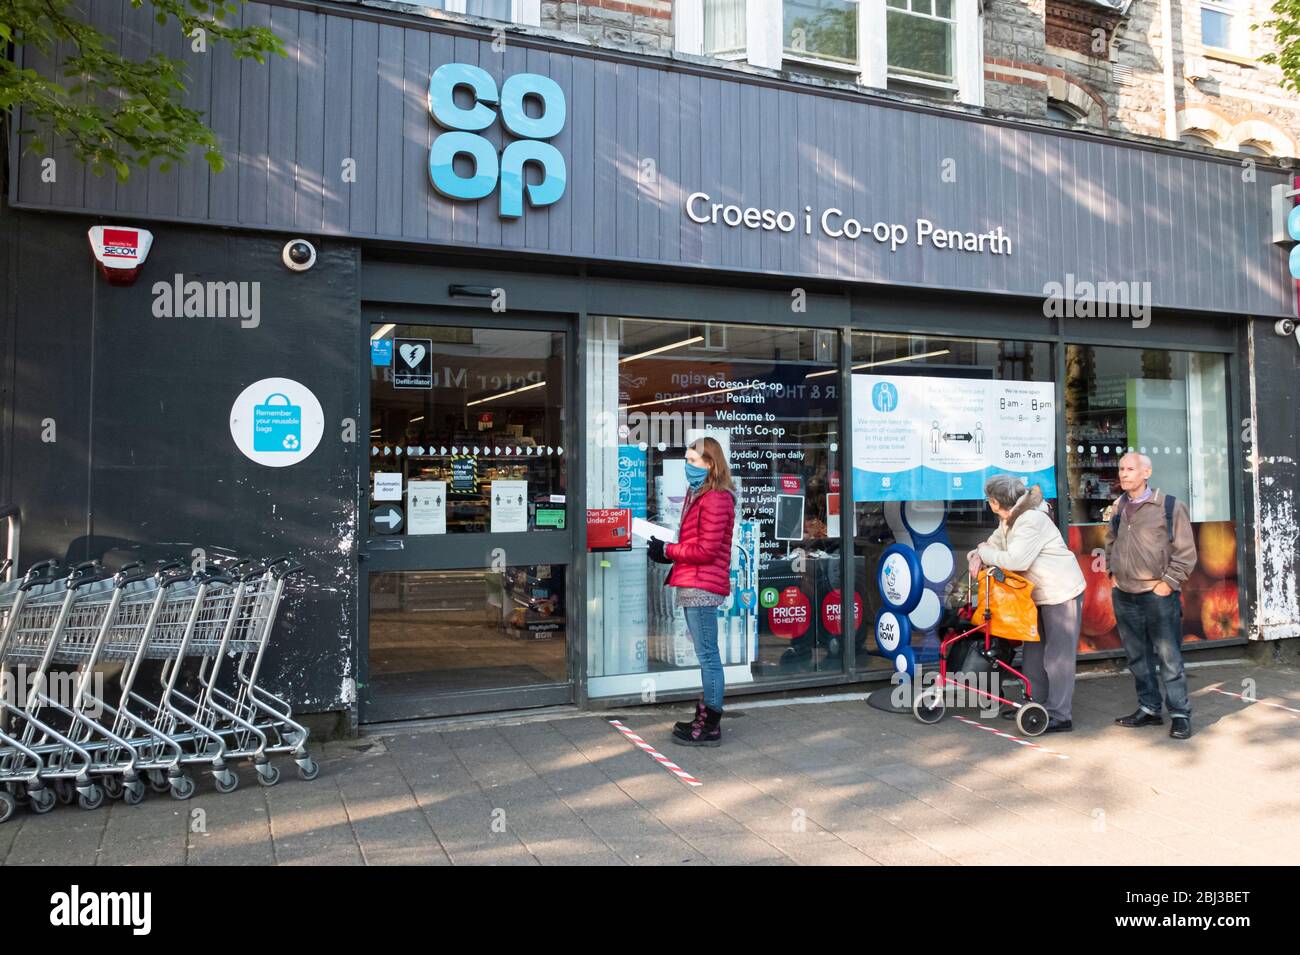 Schlange vor einem Coop-Geschäft in Penarth, Wales, Großbritannien, während  der Coronavirus Pandemie. Soziale Distanz erforderte, dass die Menschen 2  Meter voneinander entfernt waren Stockfotografie - Alamy